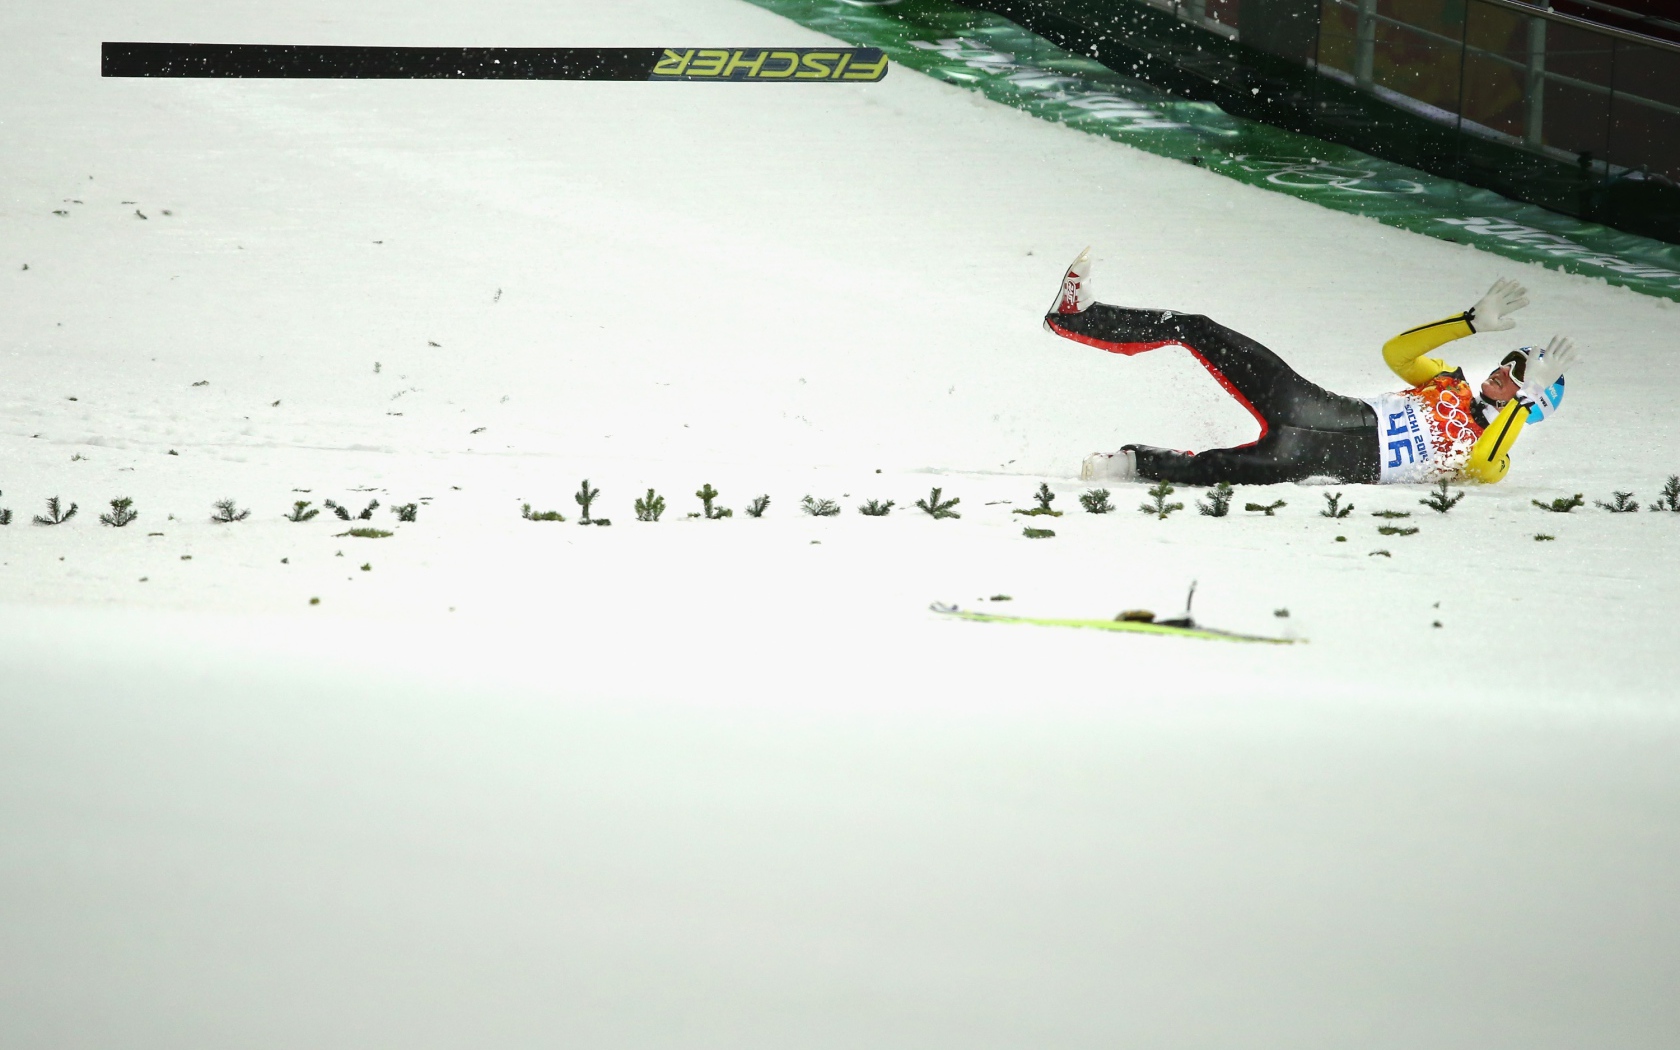 Обладатель золотой медали немецкий прыгун на лыжах Зеверин Фройнд на олимпиаде в Сочи